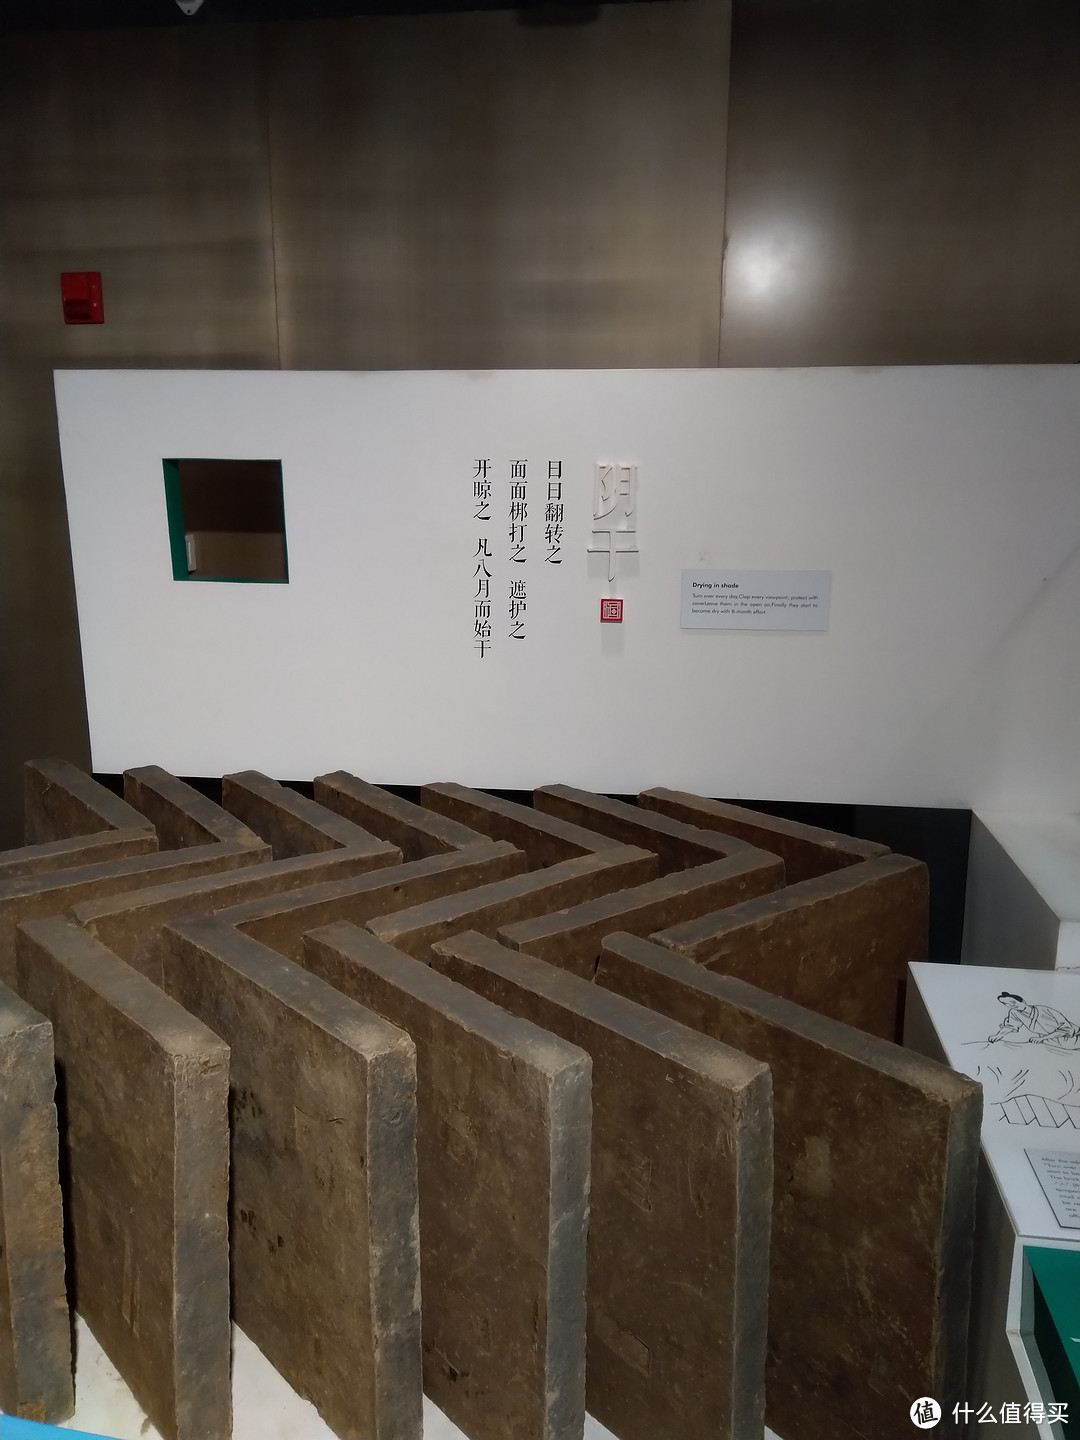 苏州御窑金砖博物馆：粗犷古朴的建筑style